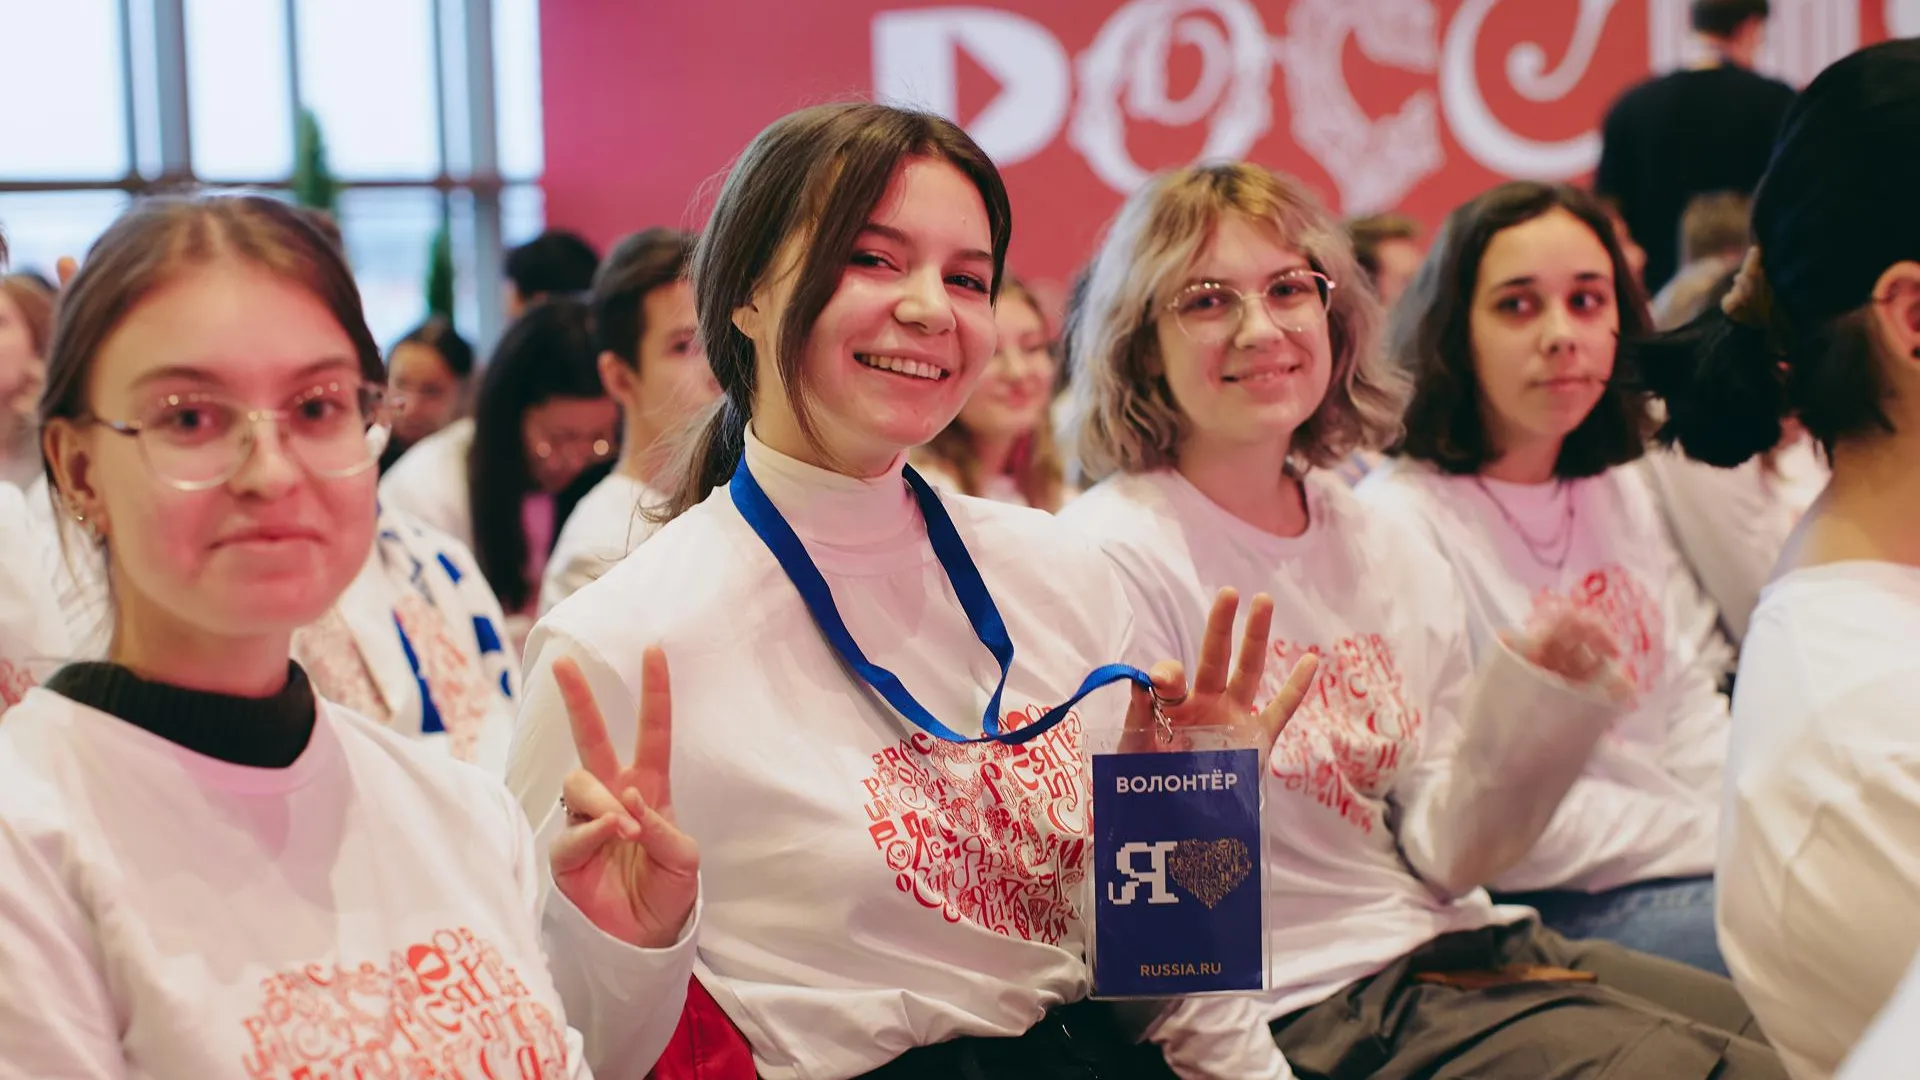 Пресс-служба комитета общественных связей и молодежной политики города Москвы